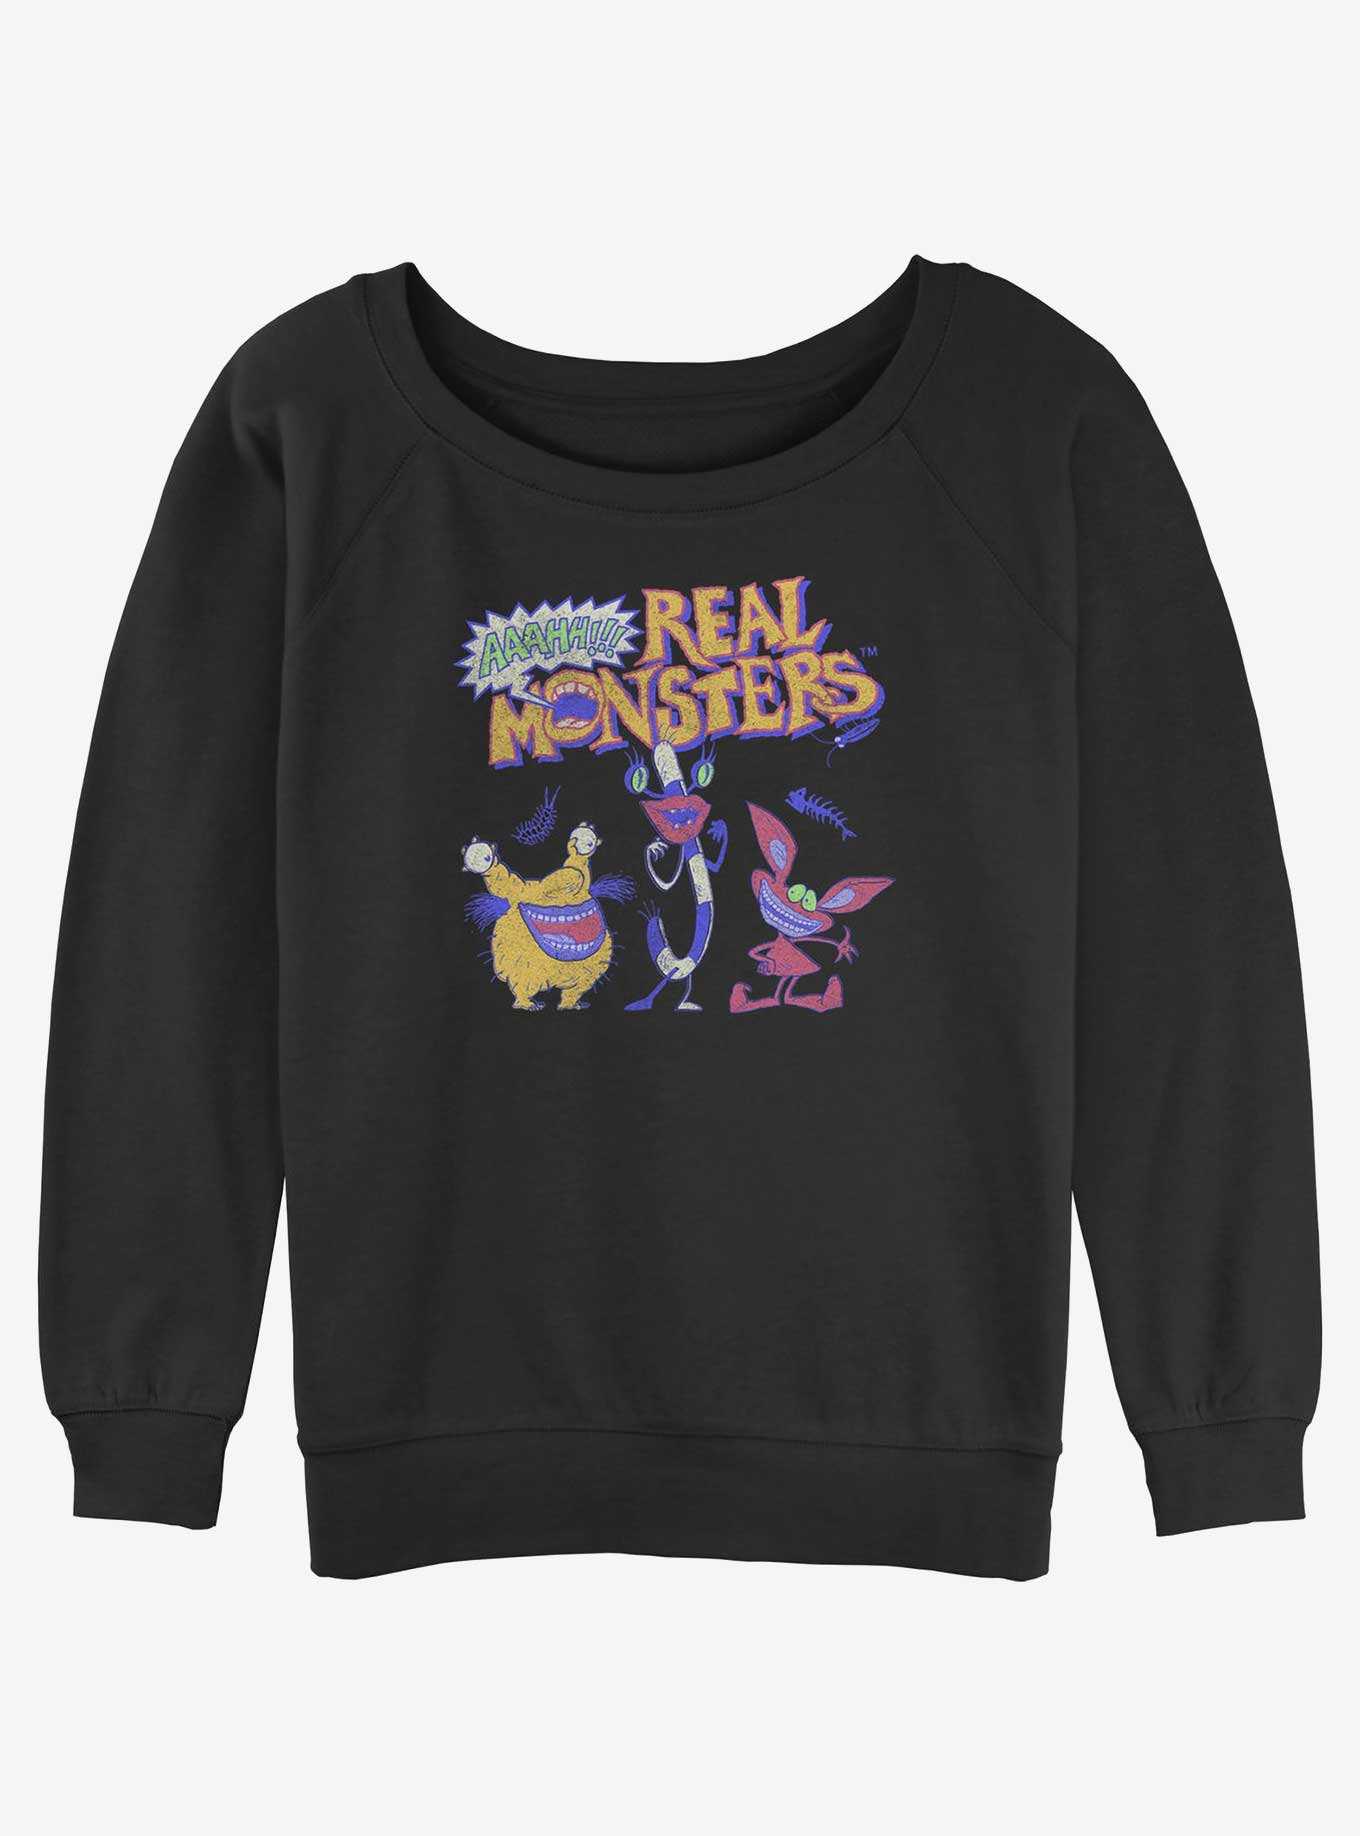 Nickelodeon Real Monsters Girls Slouchy Sweatshirt, , hi-res